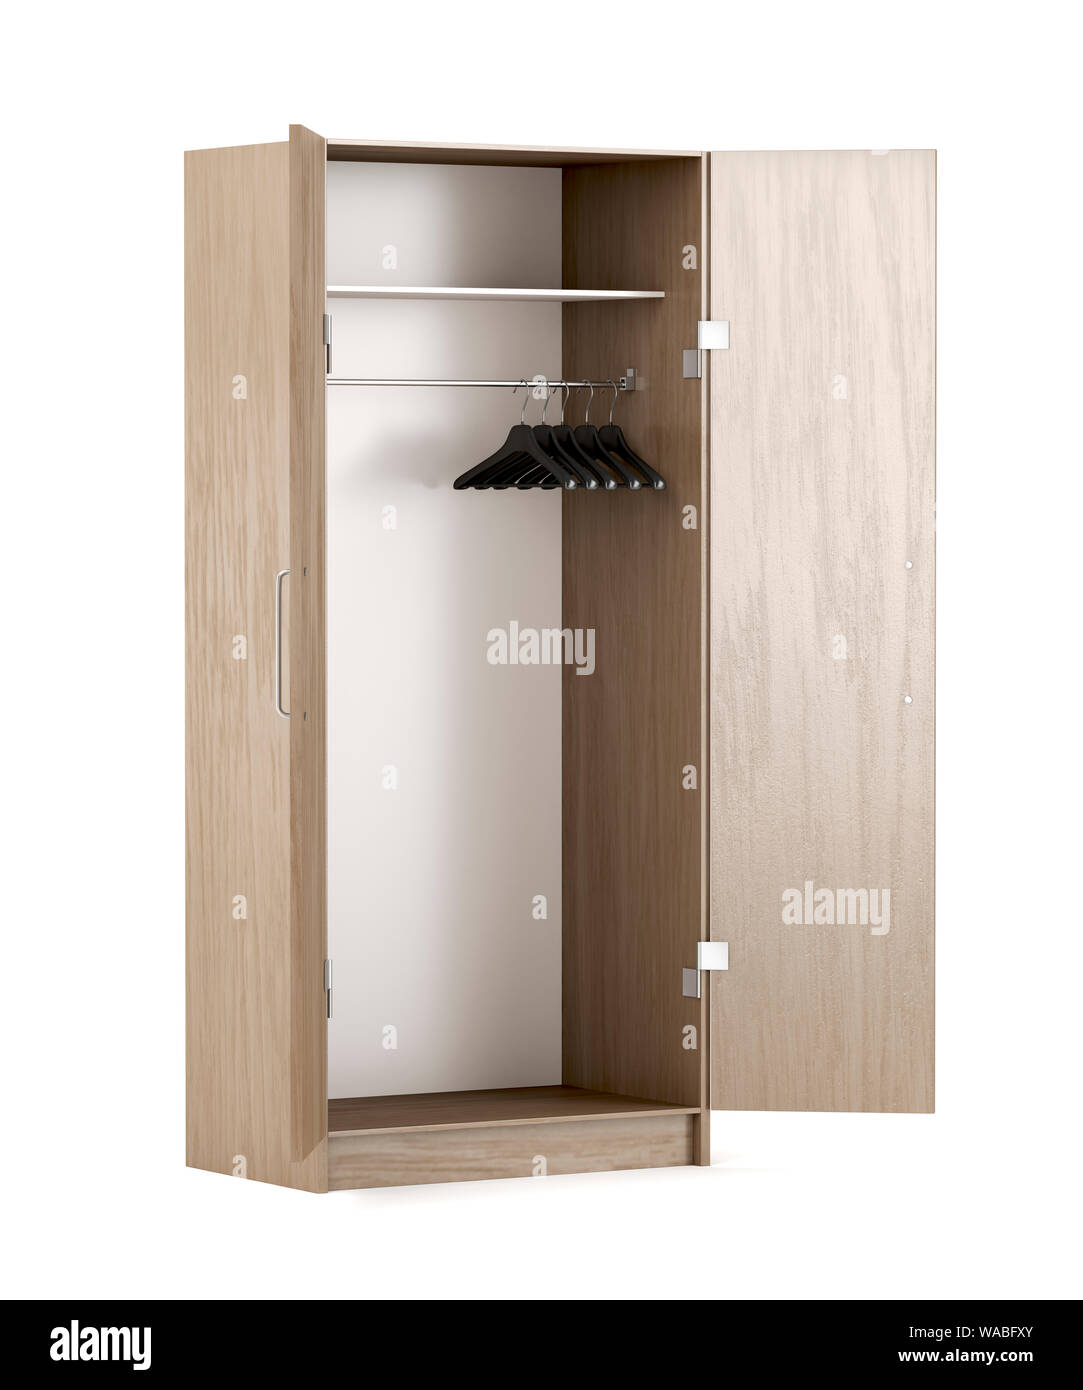 Empty wood wardrobe on white background Stock Photo - Alamy